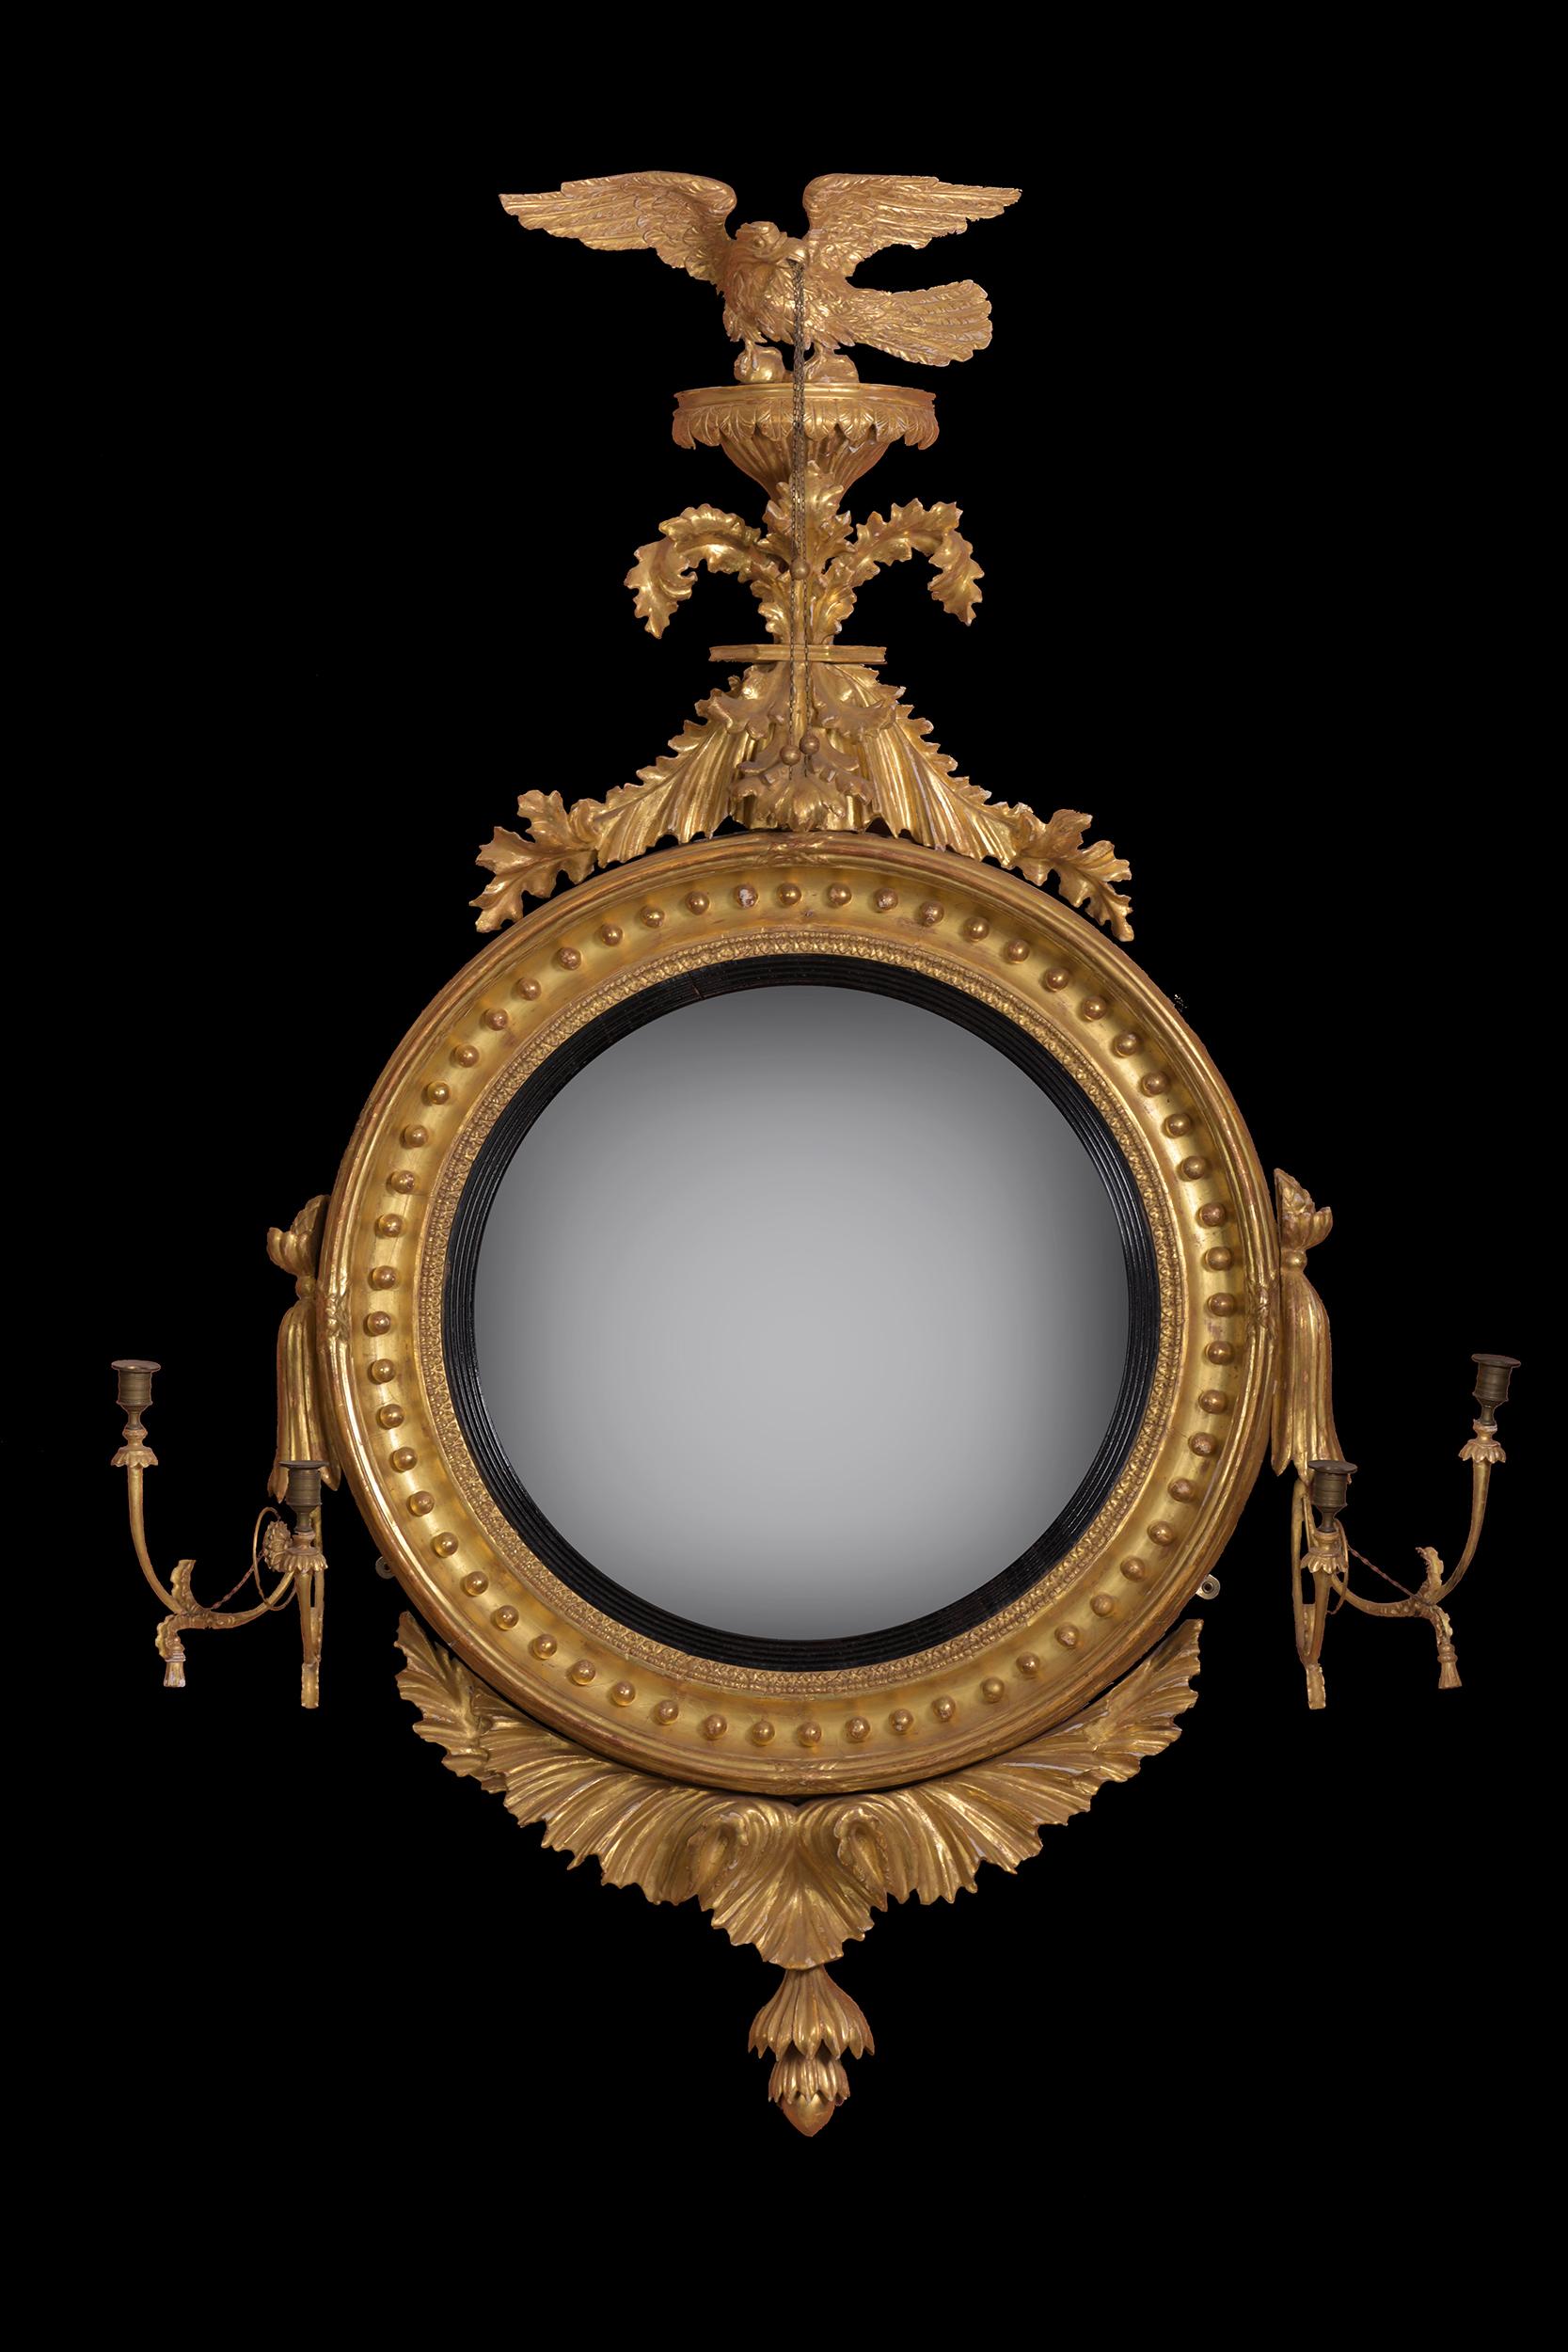 Eine sehr feine Regency-Periode geschnitzt Vergoldung und Gesso konvexen Spiegel, die Platte innerhalb einer geriffelten ebonized slip mit Ball Dekoration von einem Adler Giebel gekrönt. Auf beiden Seiten befinden sich Leuchter mit den originalen